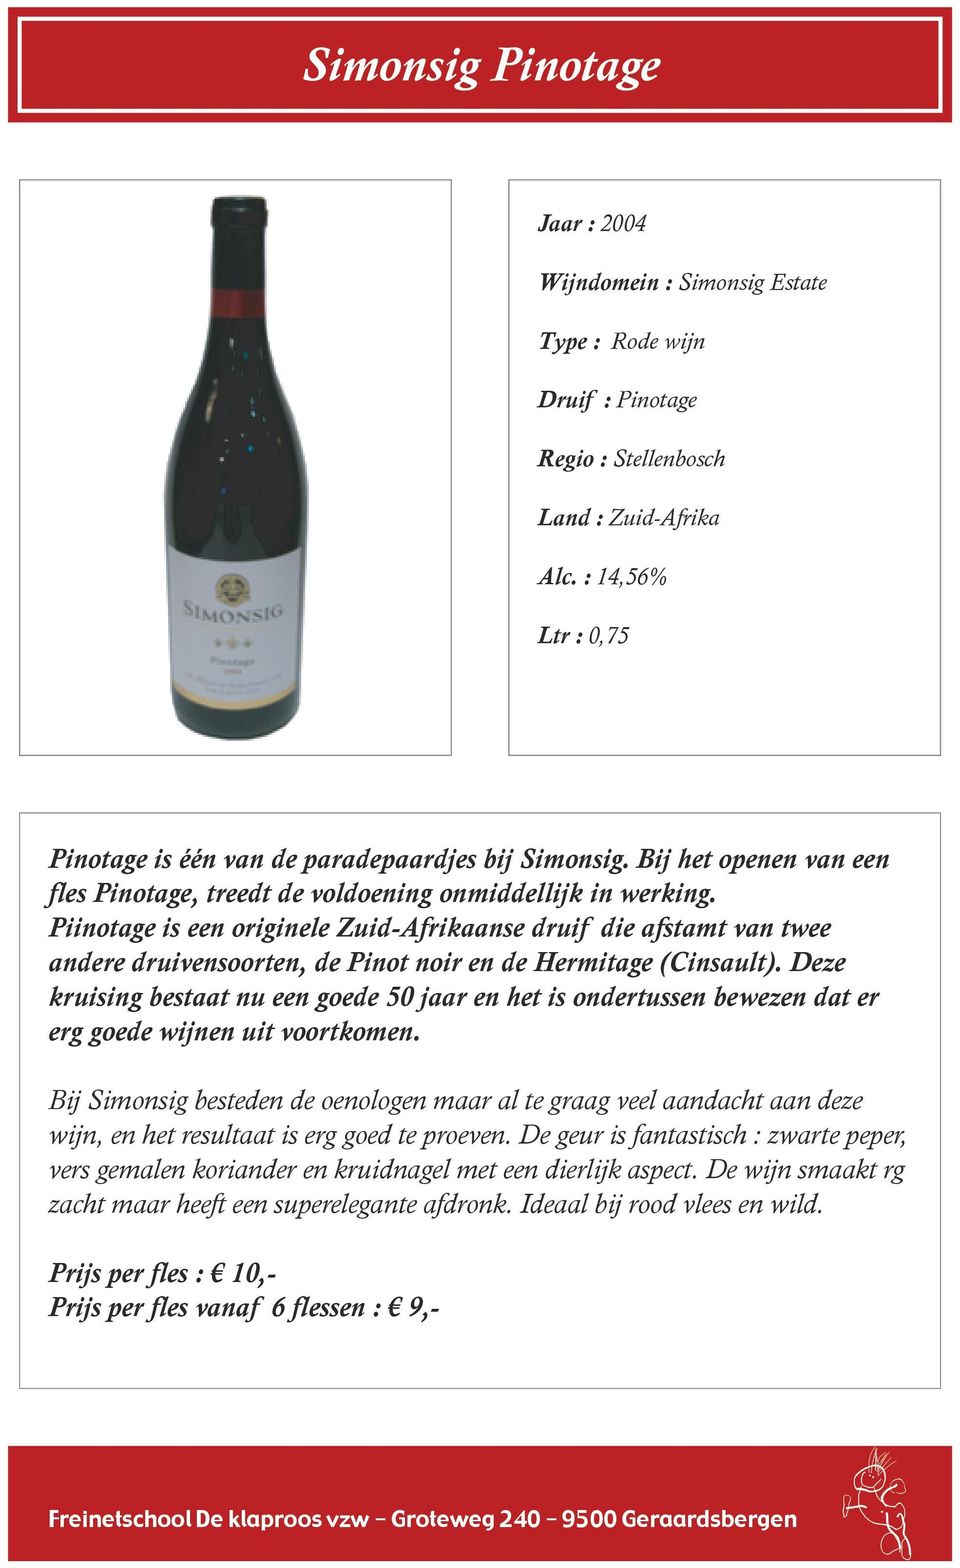 Piinotage is een originele Zuid-Afrikaanse druif die afstamt van twee andere druivensoorten, de Pinot noir en de Hermitage (Cinsault).